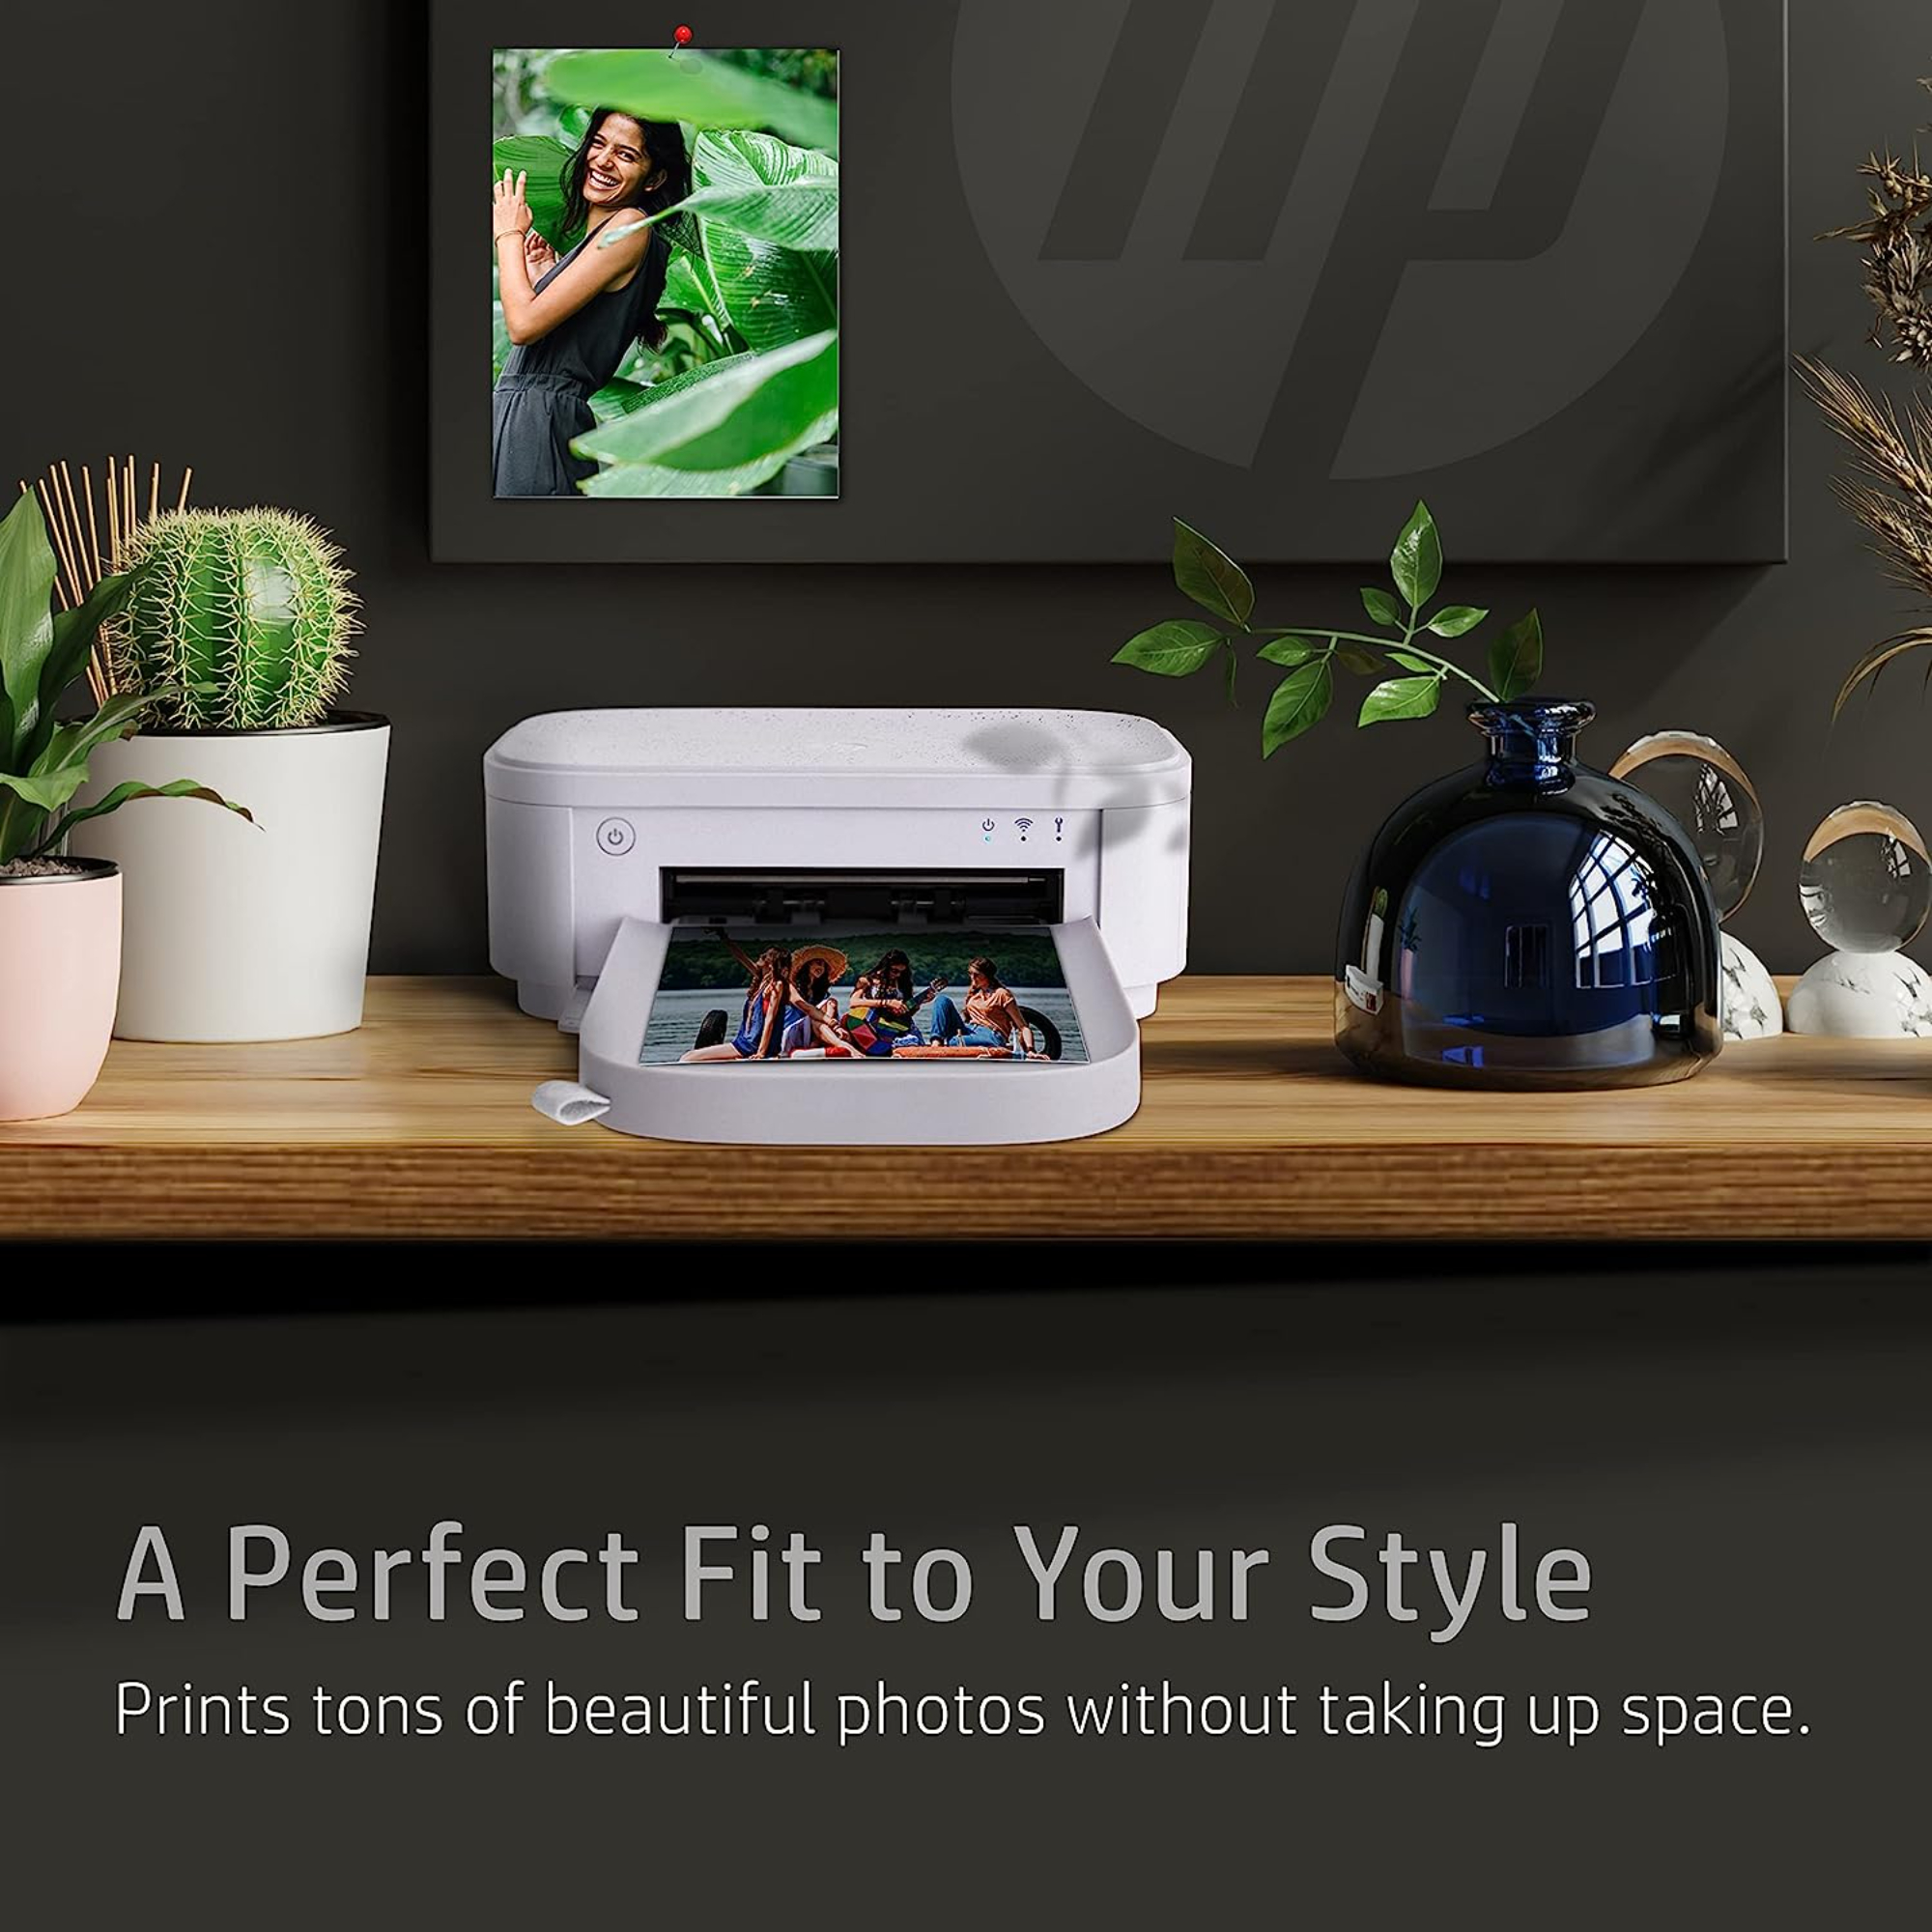 HP Sprocket Studio 4x6 Photo Paper (80 Sheets) HPISC80 - Best Buy